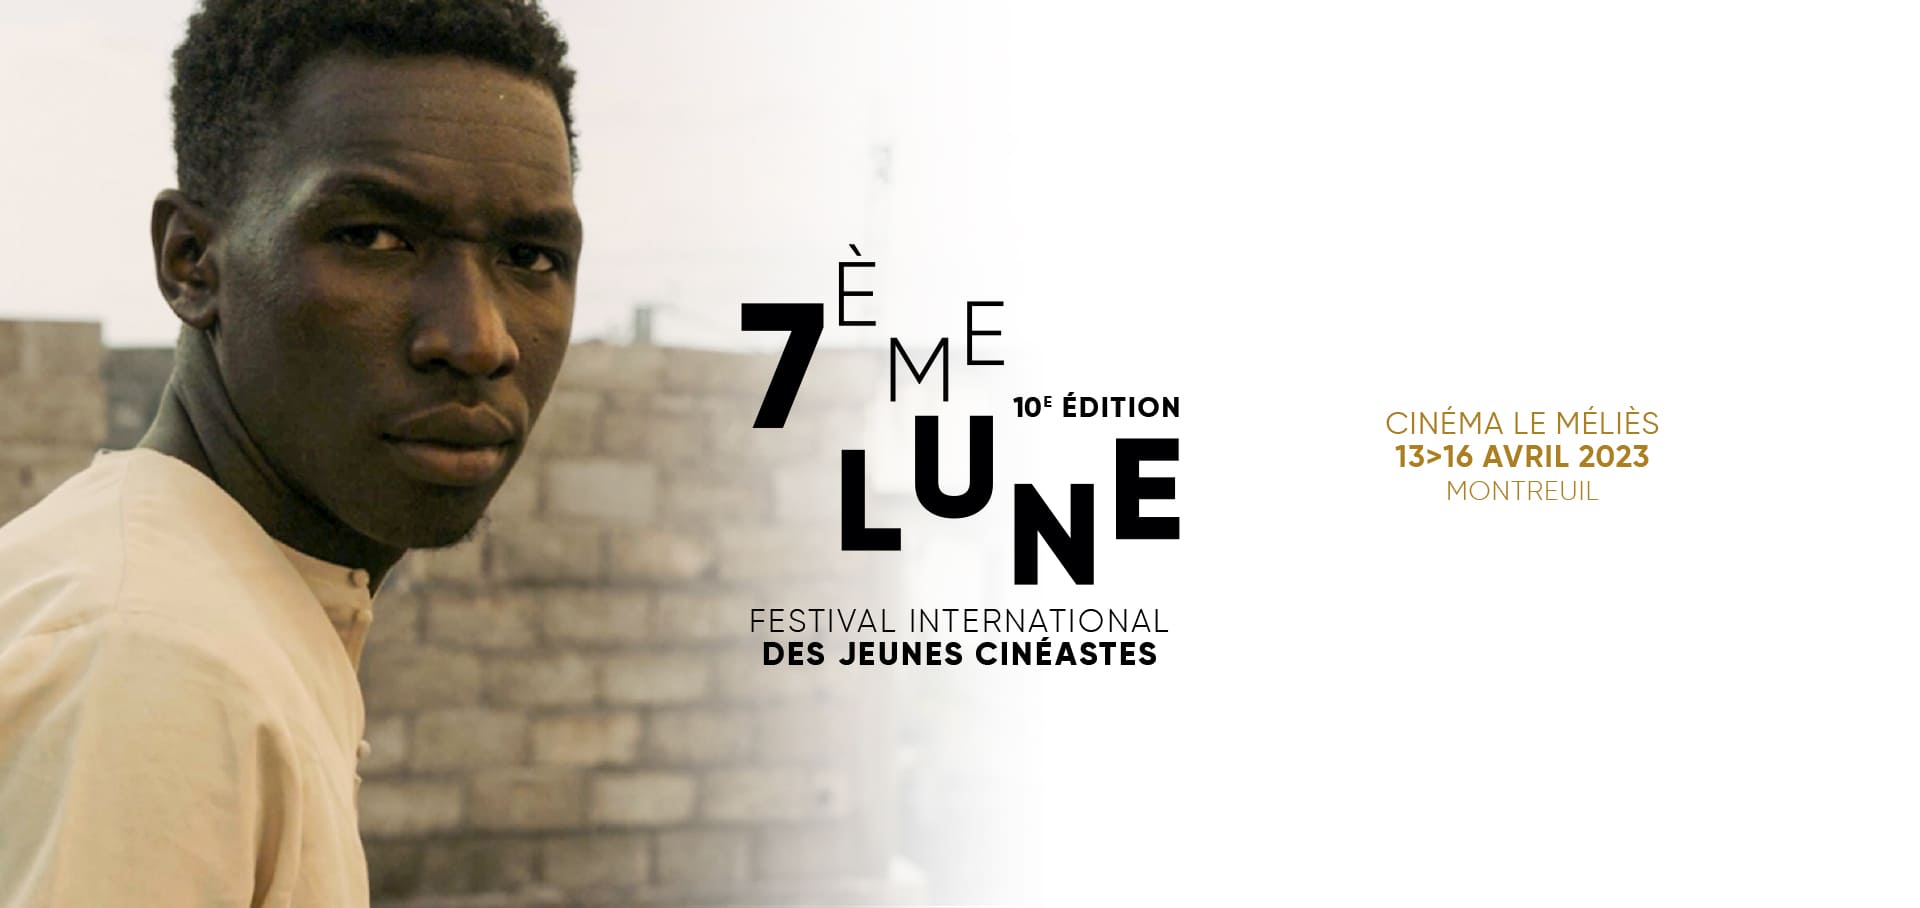 7ème Lune - Festival International des jeunes cinéastes. Du 13 au 16 avril 2023 au Cinéma Le Méliès à Montreuil. -